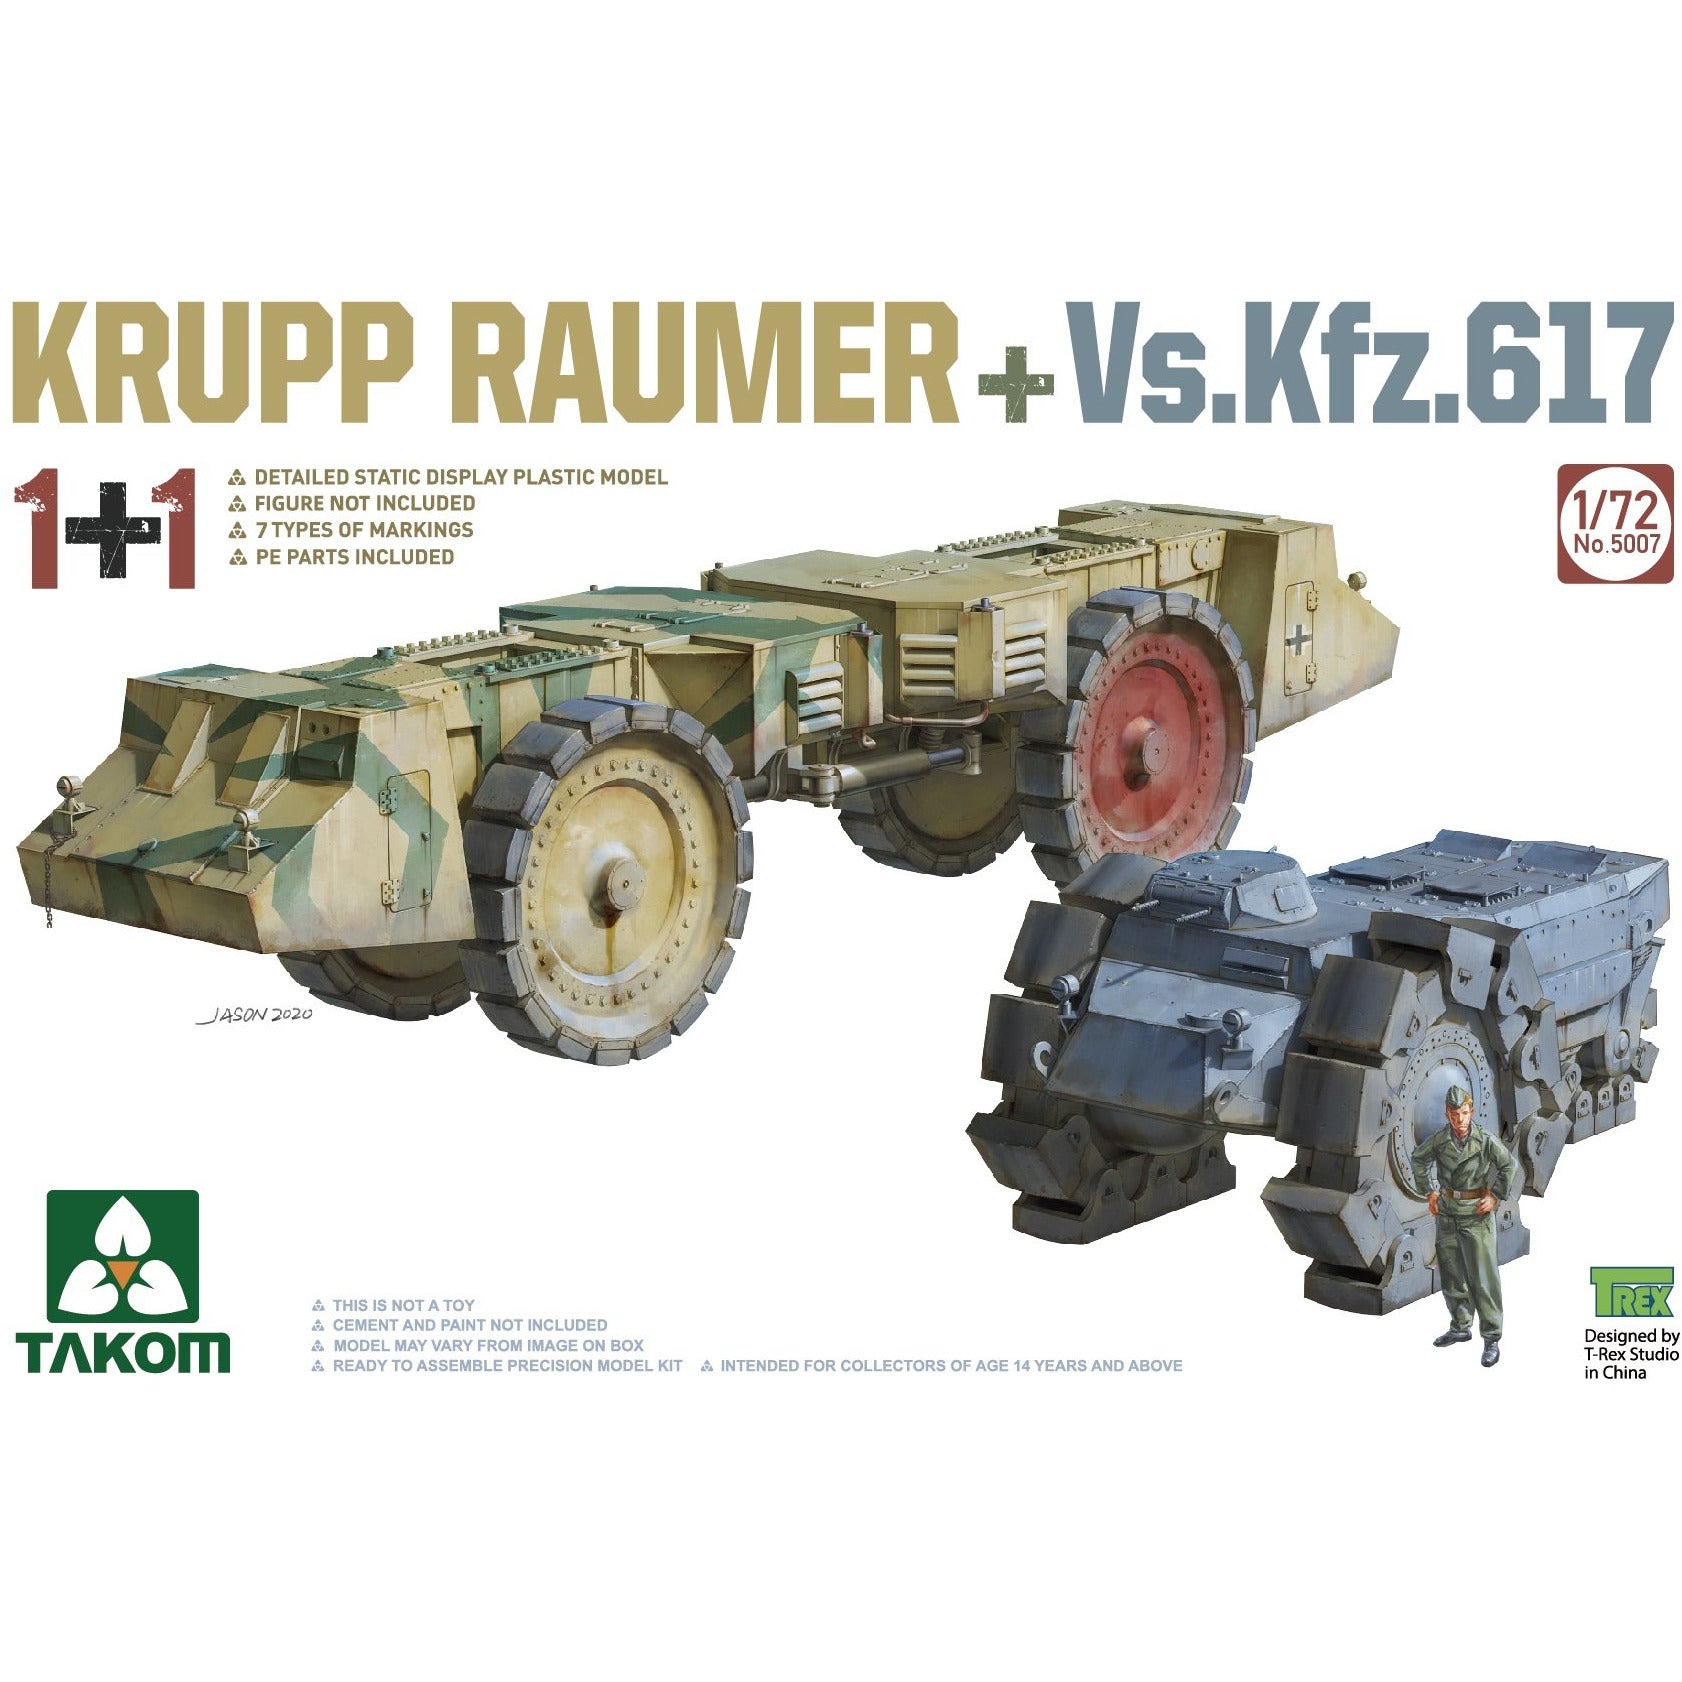 Krupp Raumer + Vs.Kfz.617 1/72 #5007 by Takom